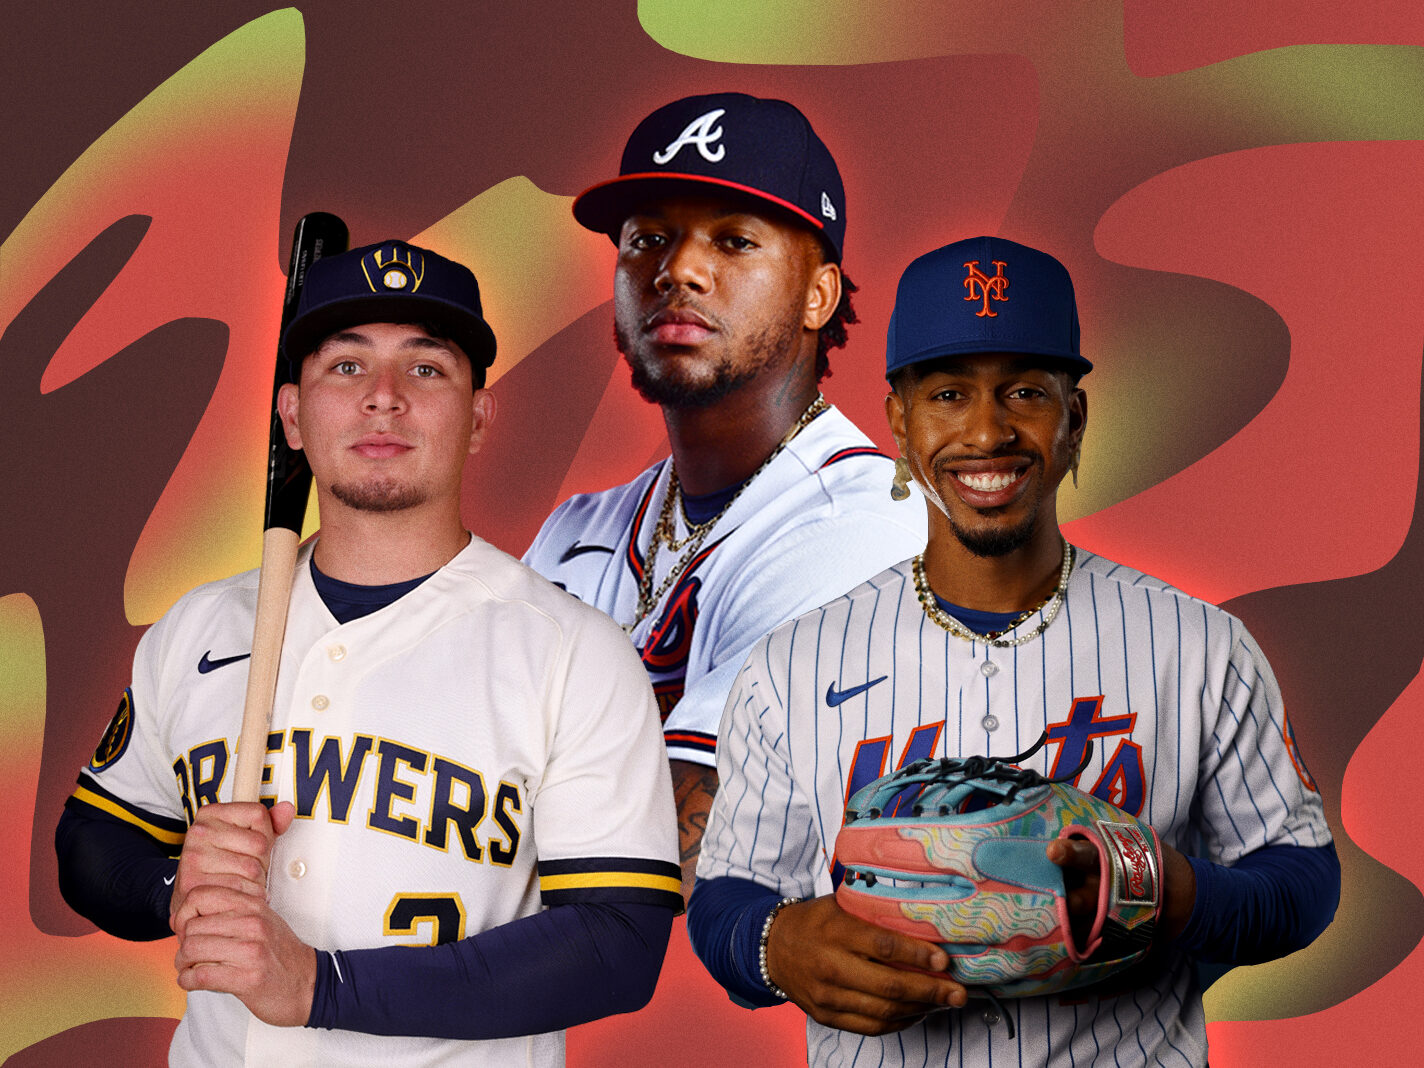 MLB spring training baseball caps for 2020